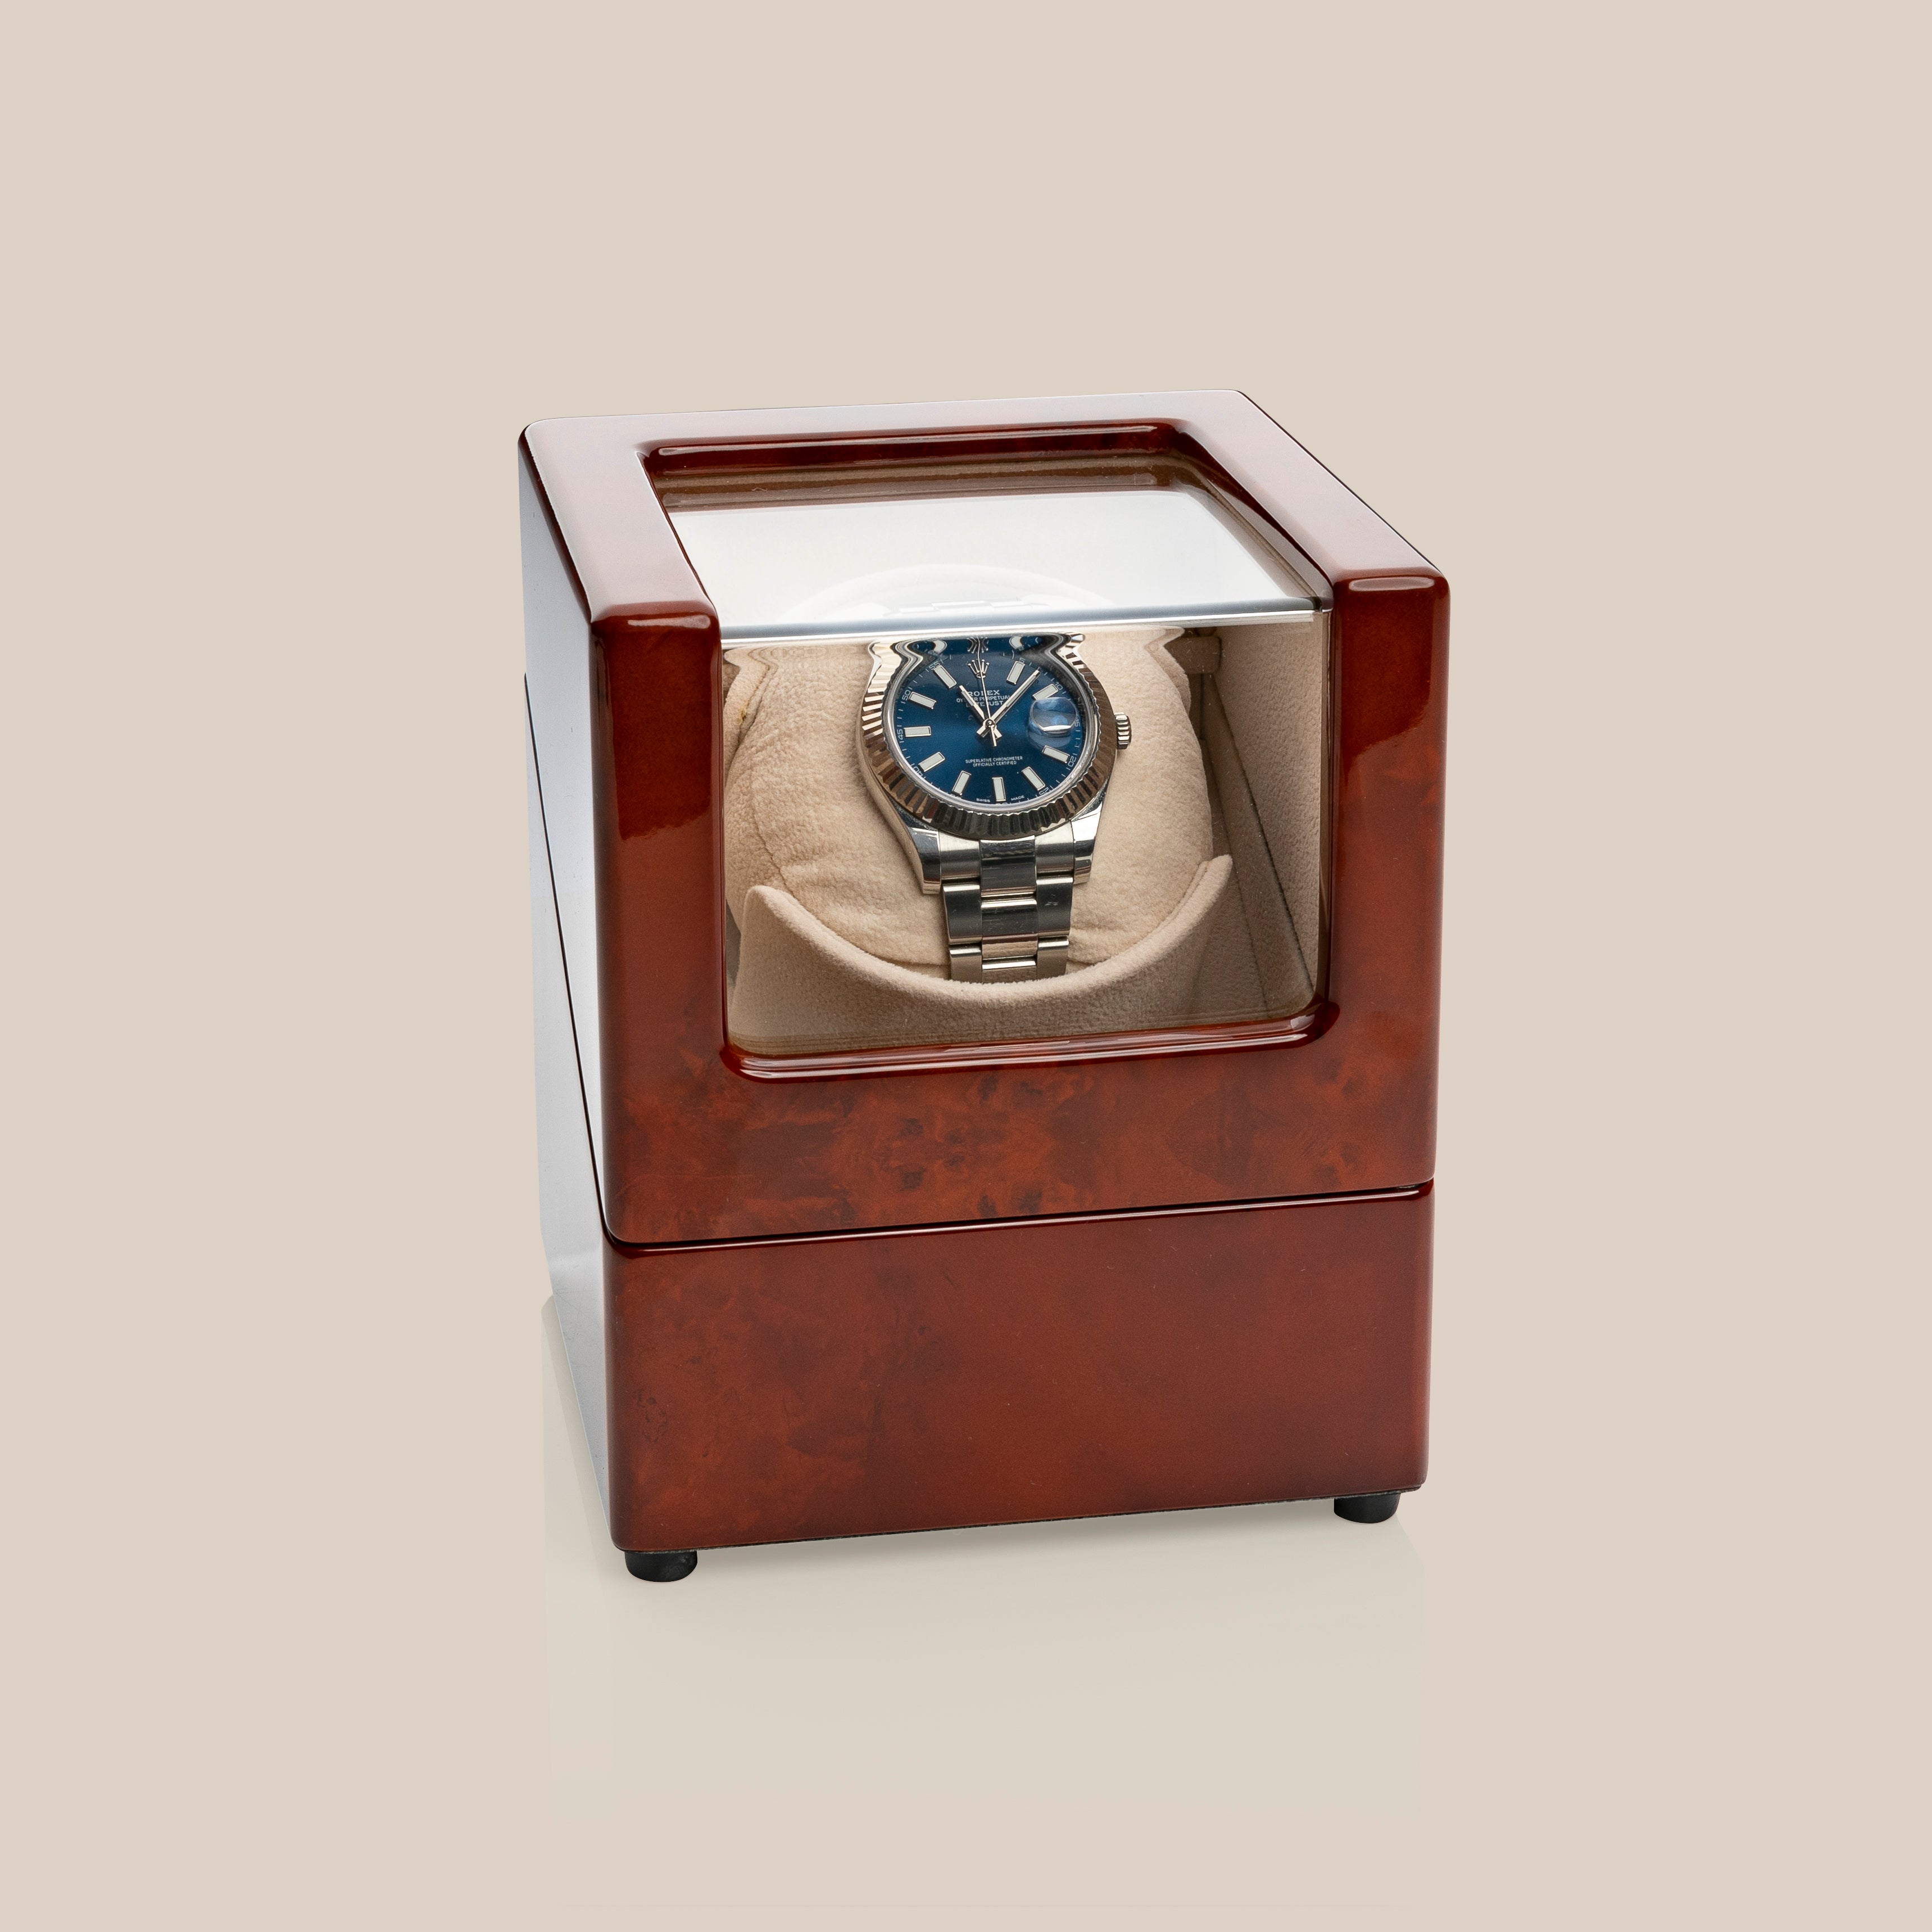 Movimentador de relógio WW78 (marrom/camelo) - 1 relógio